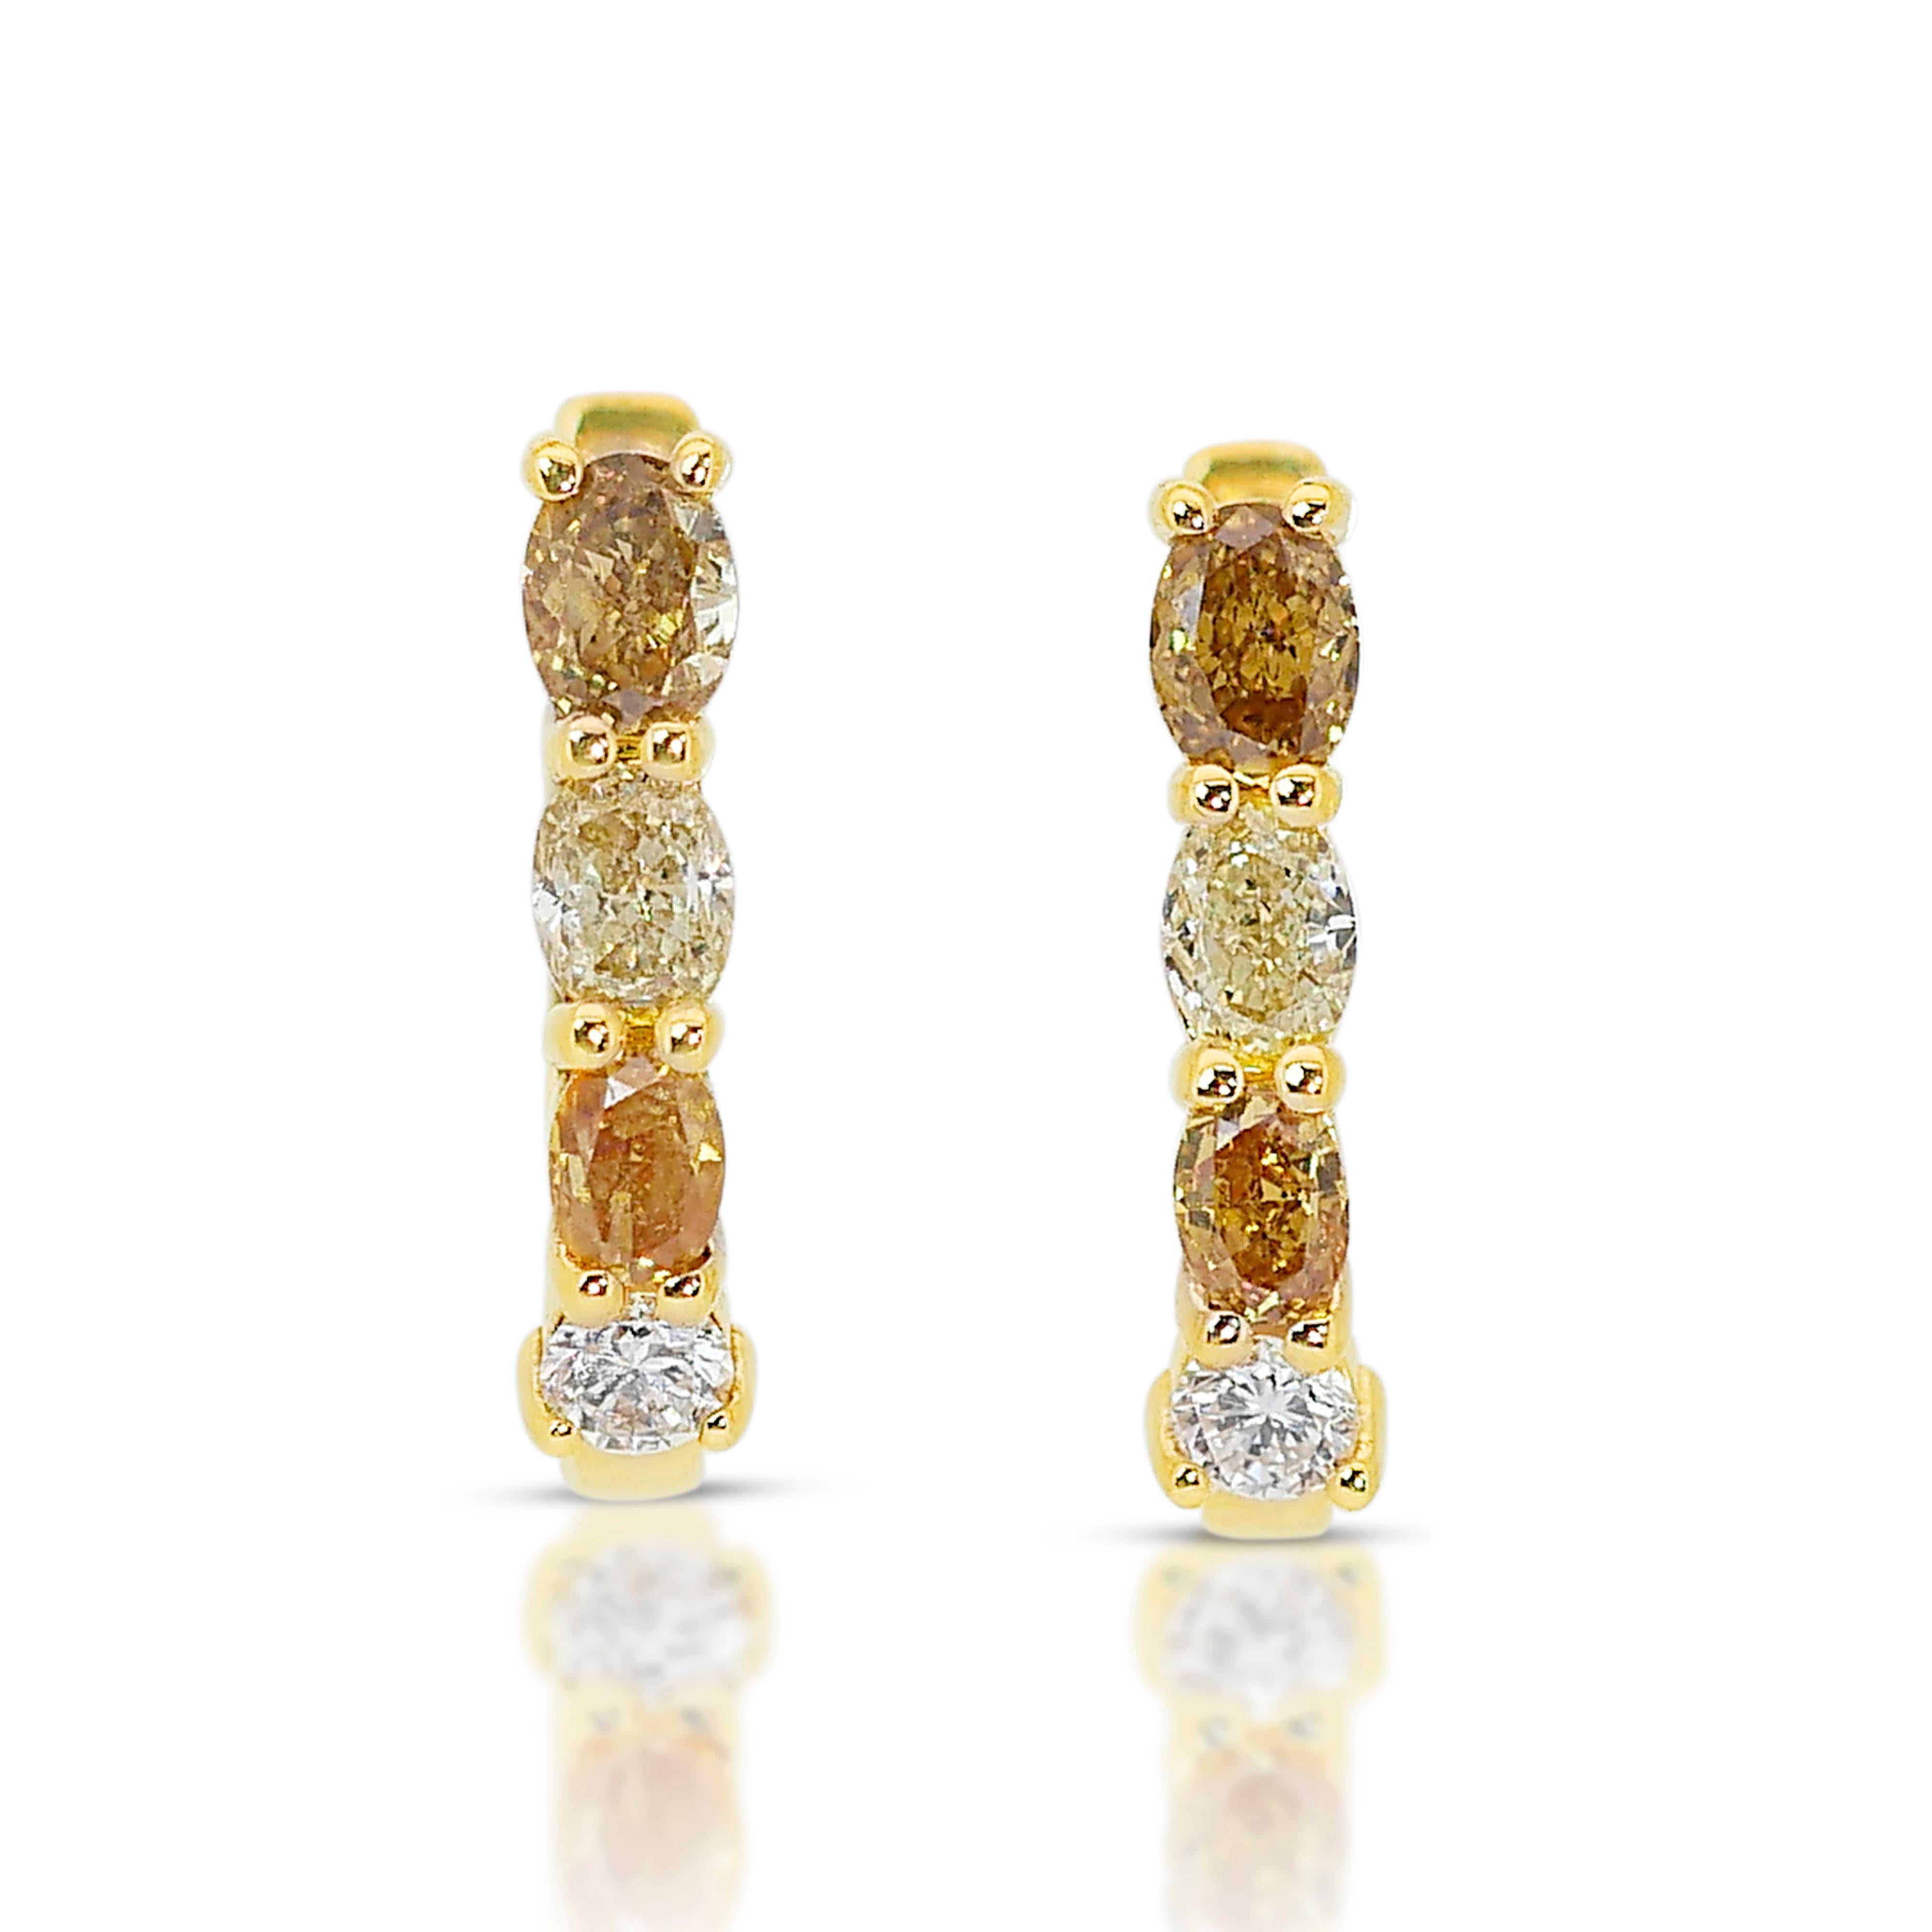 Strahlende 1,44 ct Fancy Colored Diamond Ohrringe in 18k Gelbgold - IGI zertifiziert

Wir stellen Ihnen unsere strahlenden Ohrringe aus farbigen Diamanten vor, eine faszinierende Kreation, die Luxus, Farbe und Licht verkörpert. Gefertigt aus